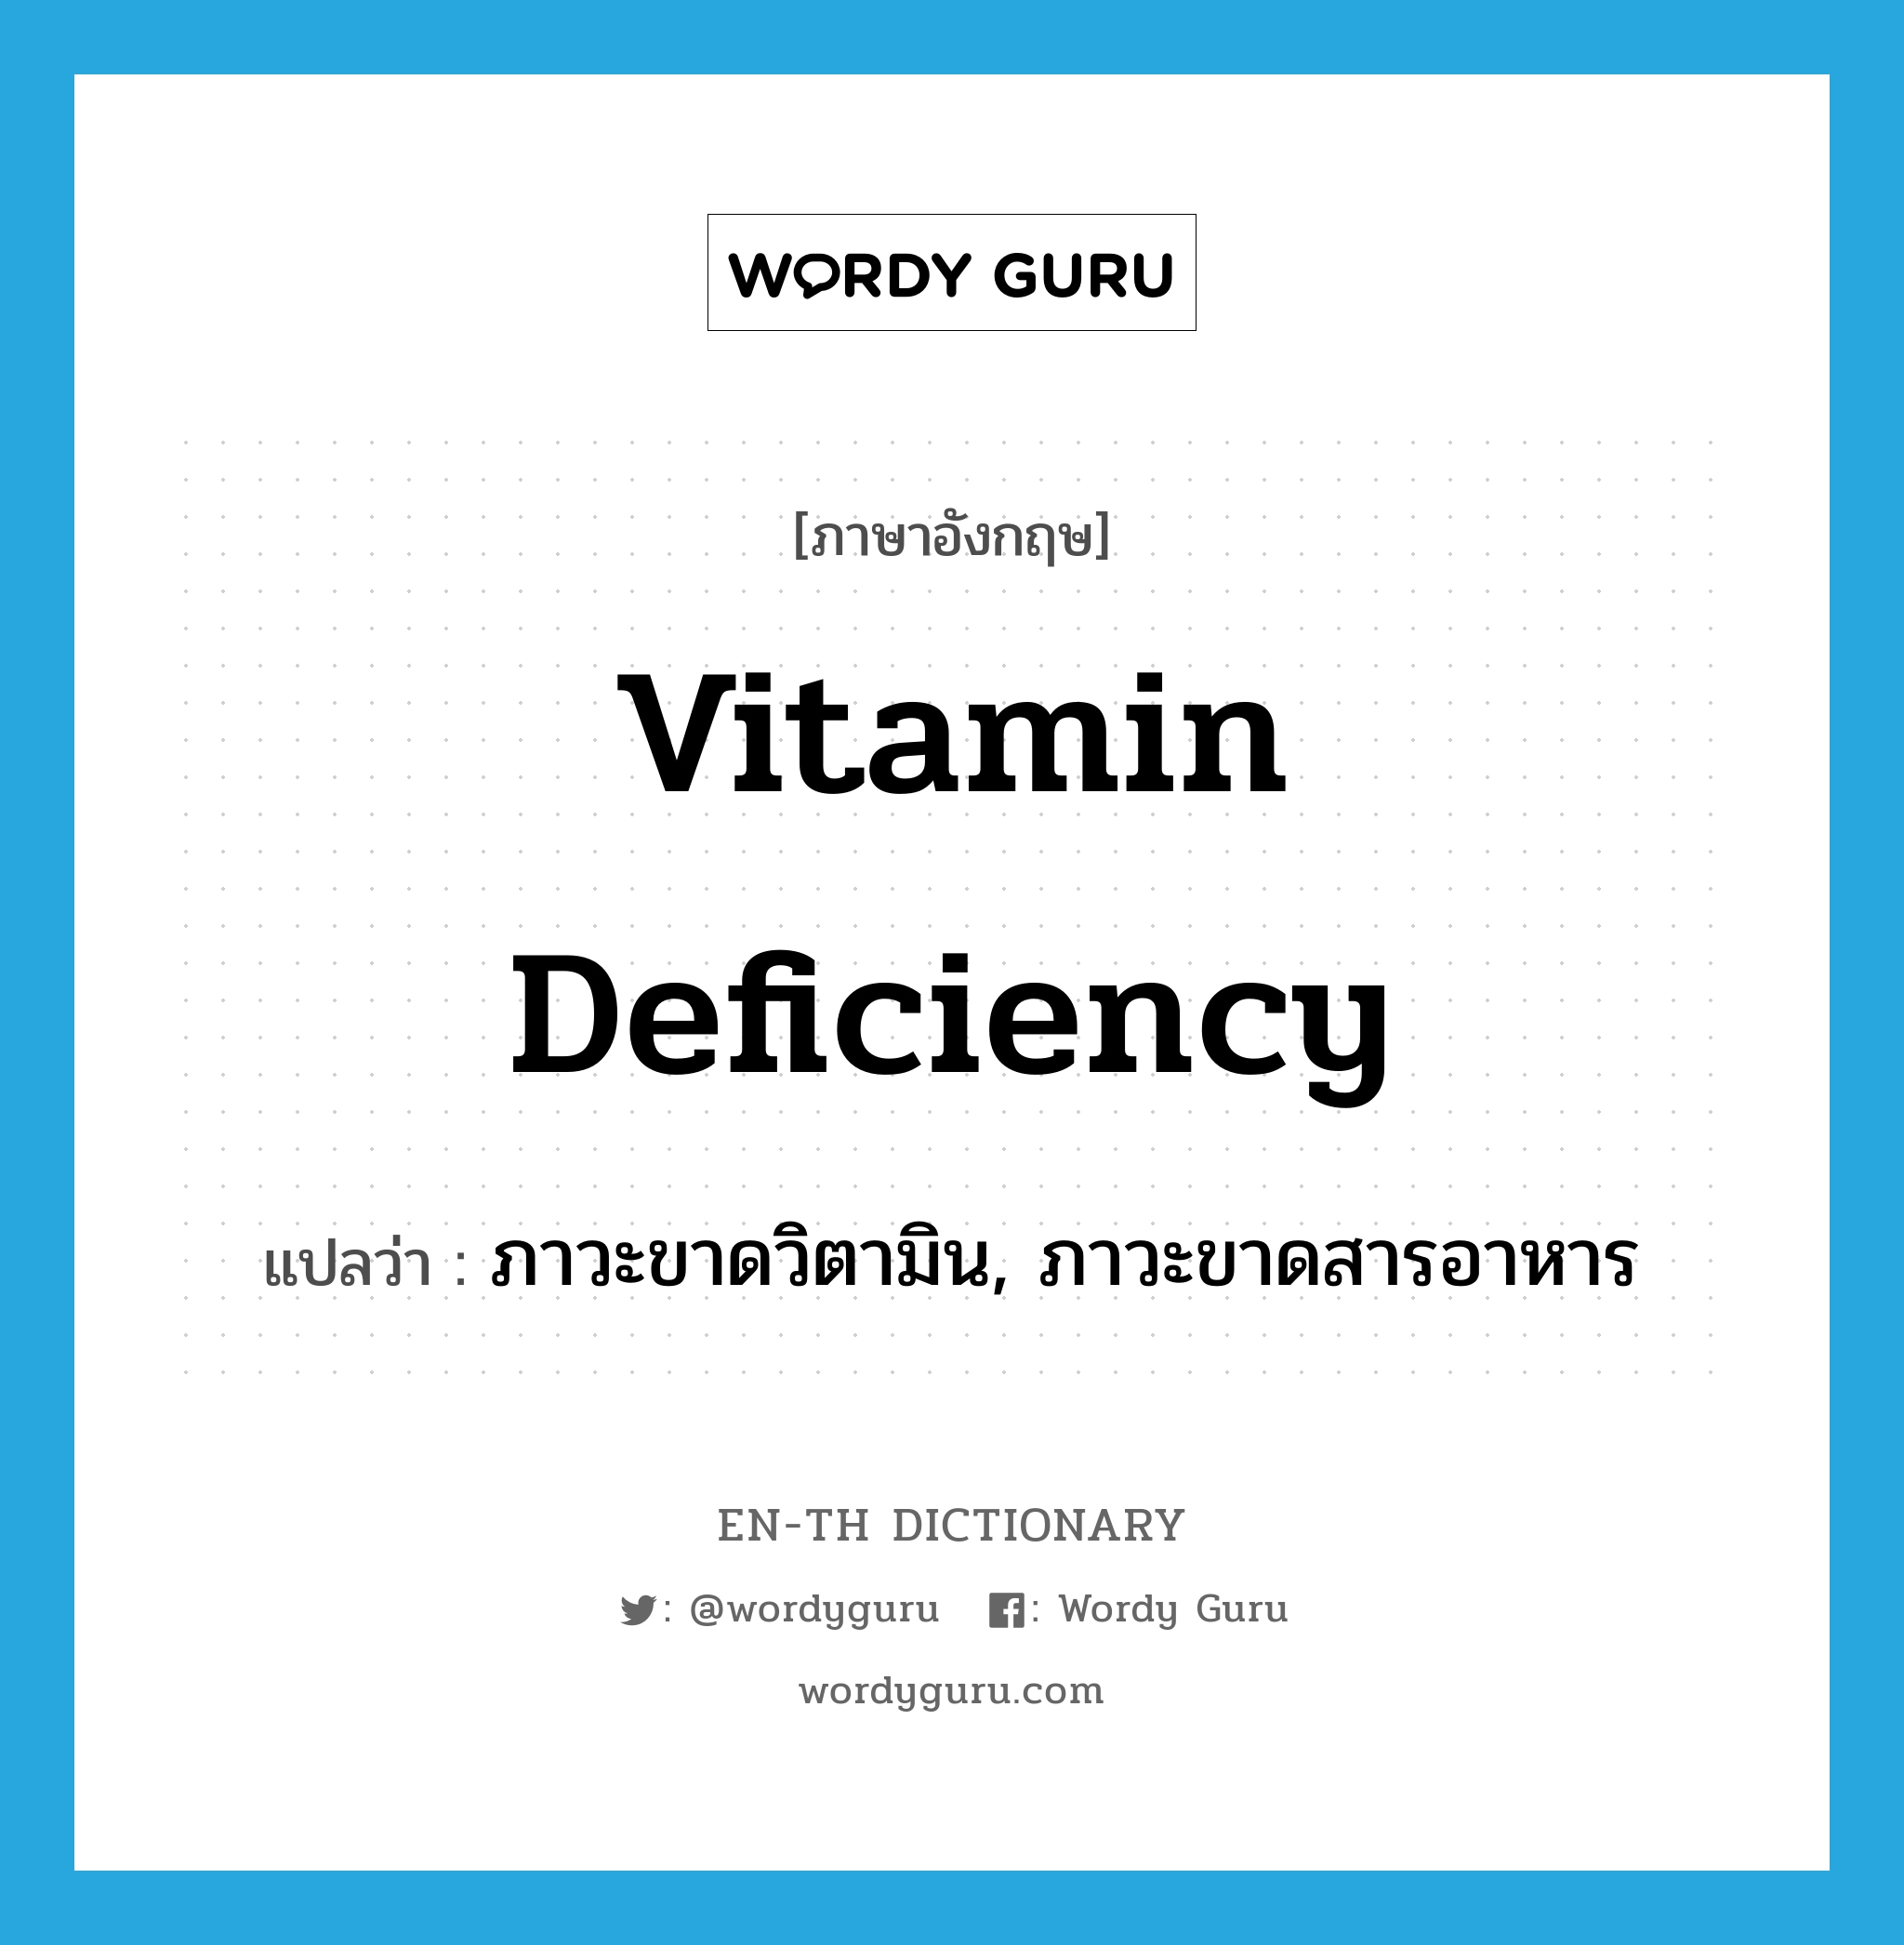 vitamin deficiency แปลว่า?, คำศัพท์ภาษาอังกฤษ vitamin deficiency แปลว่า ภาวะขาดวิตามิน, ภาวะขาดสารอาหาร ประเภท N หมวด N